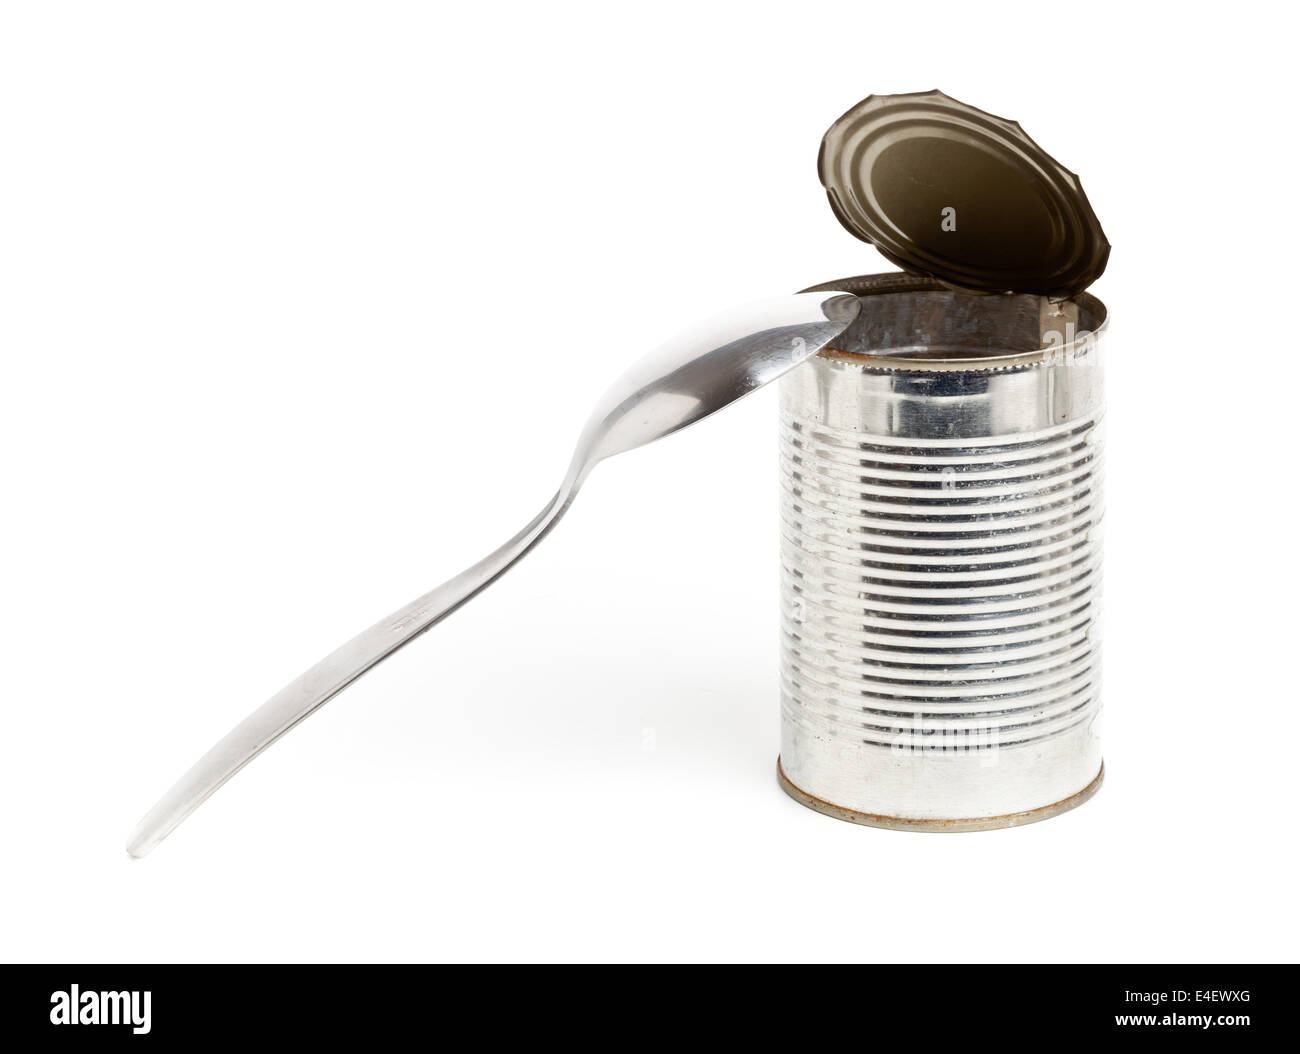 Svuotare conserve alimentari tin con cucchiaio su sfondo bianco - malsano concetto di mangiare Foto Stock